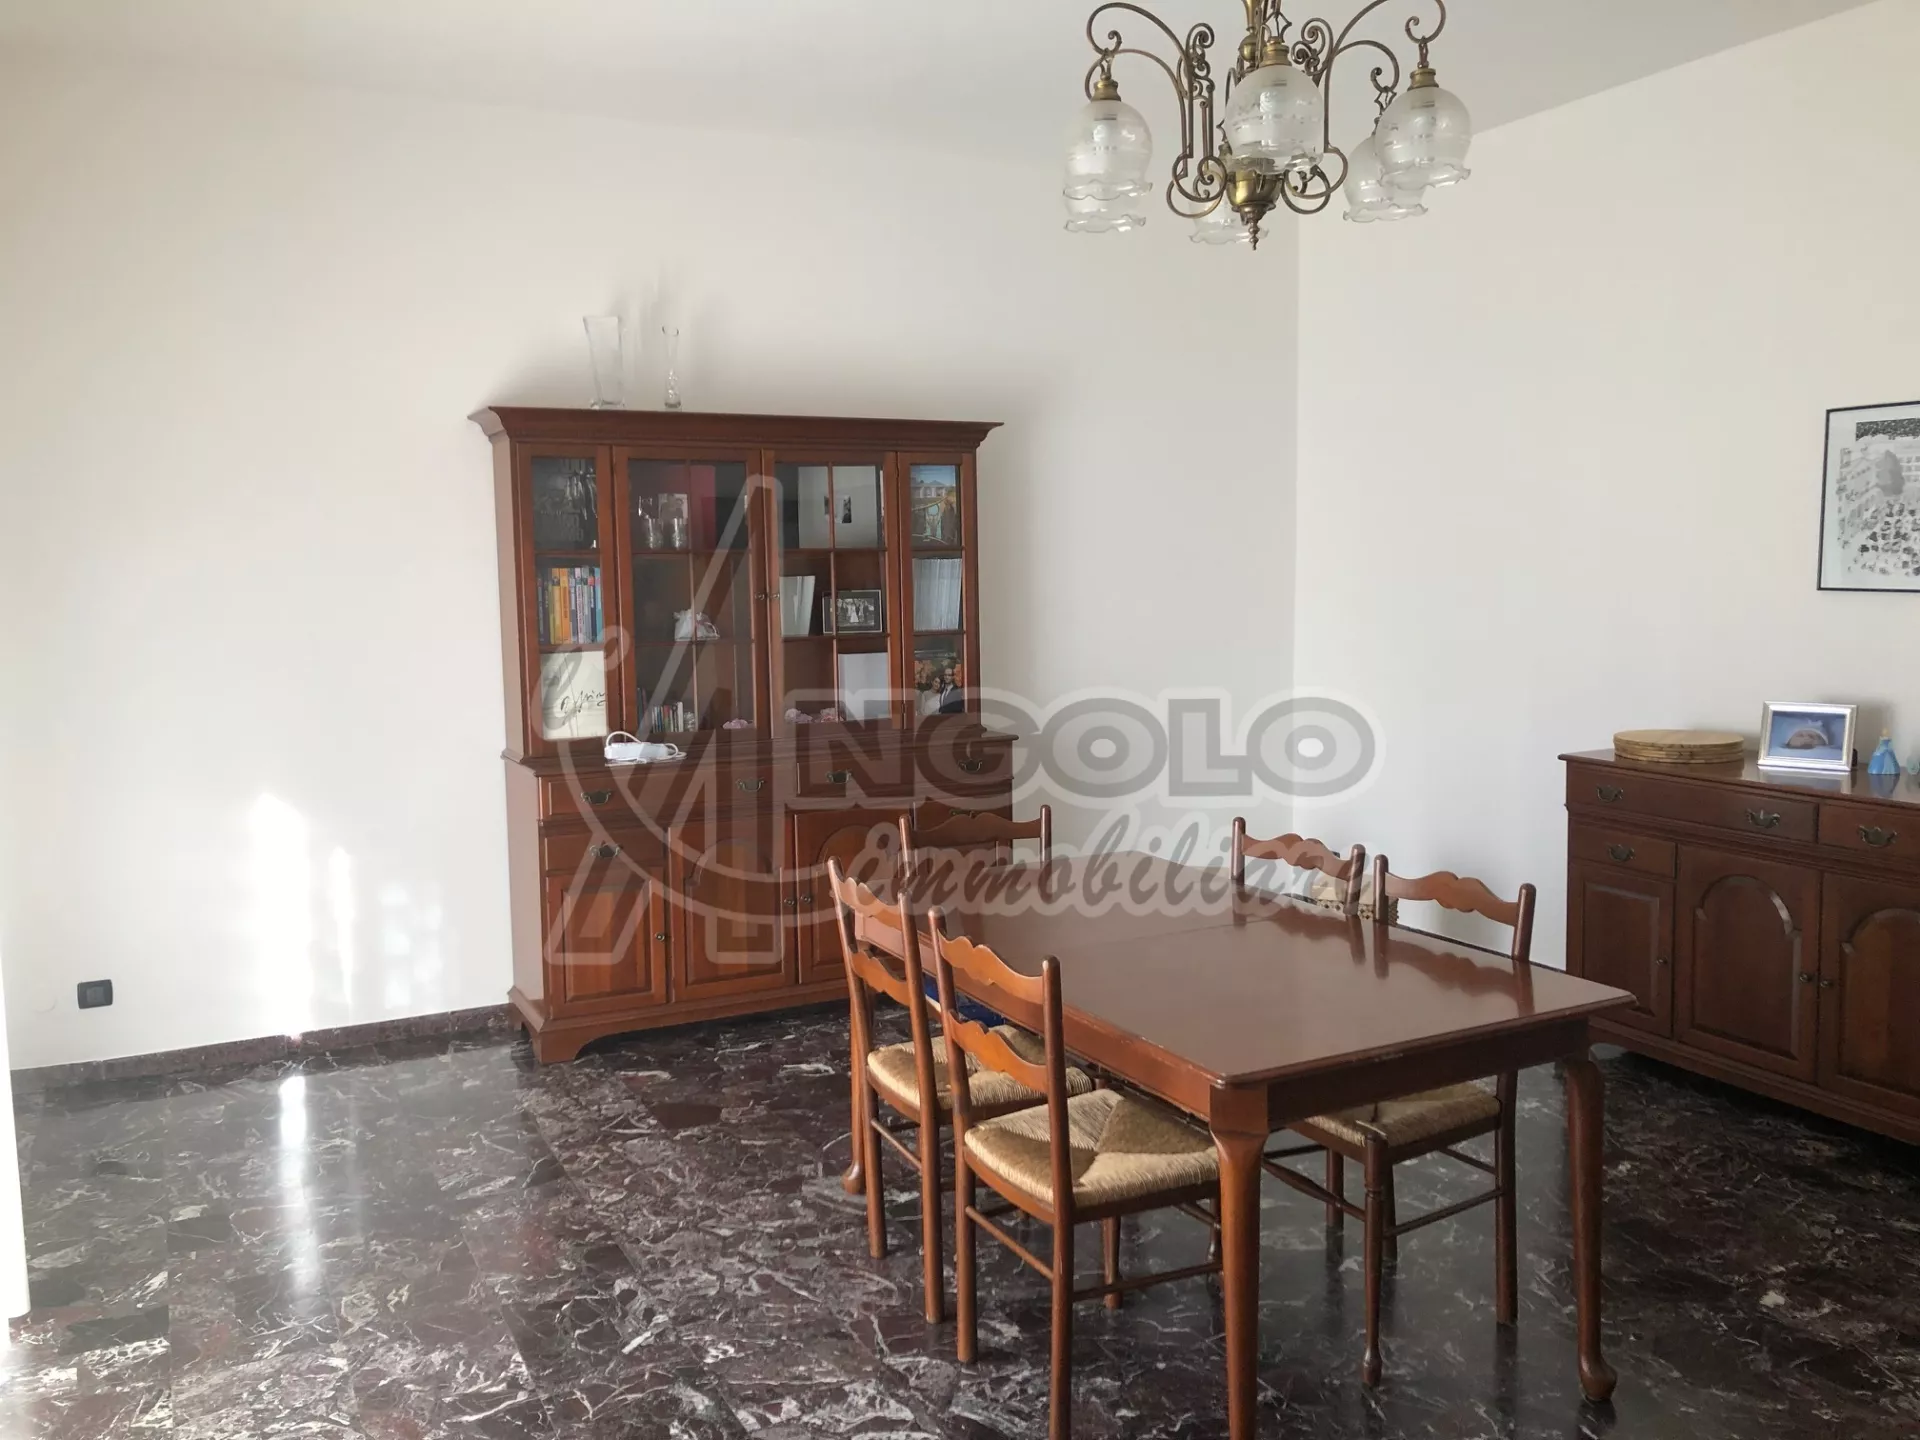 Immagine per Appartamento in vendita a Occhiobello via Trento 30